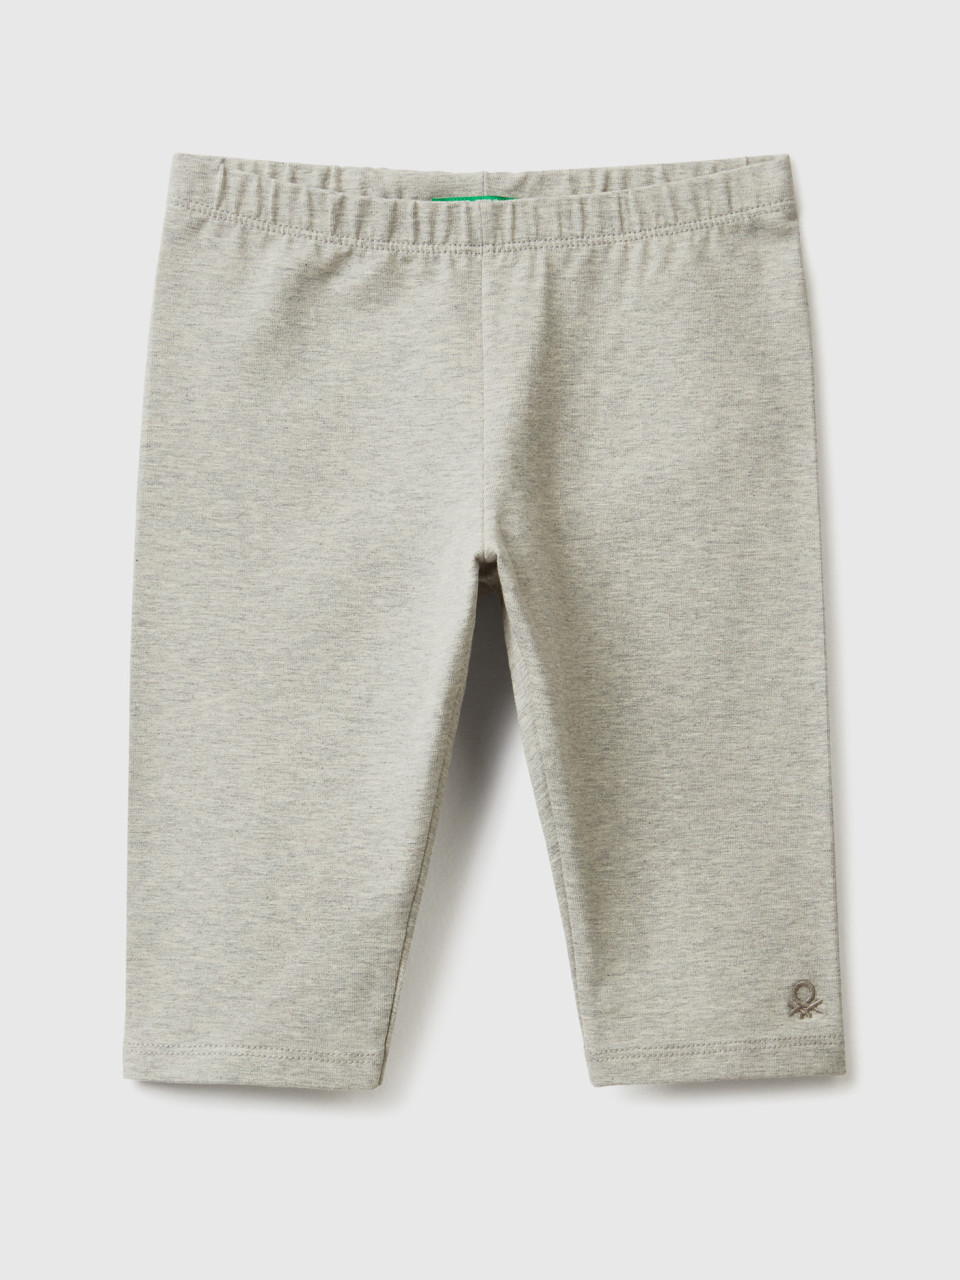 Benetton, 3/4 Leggings In Stretch Cotton, Light Gray, Kids